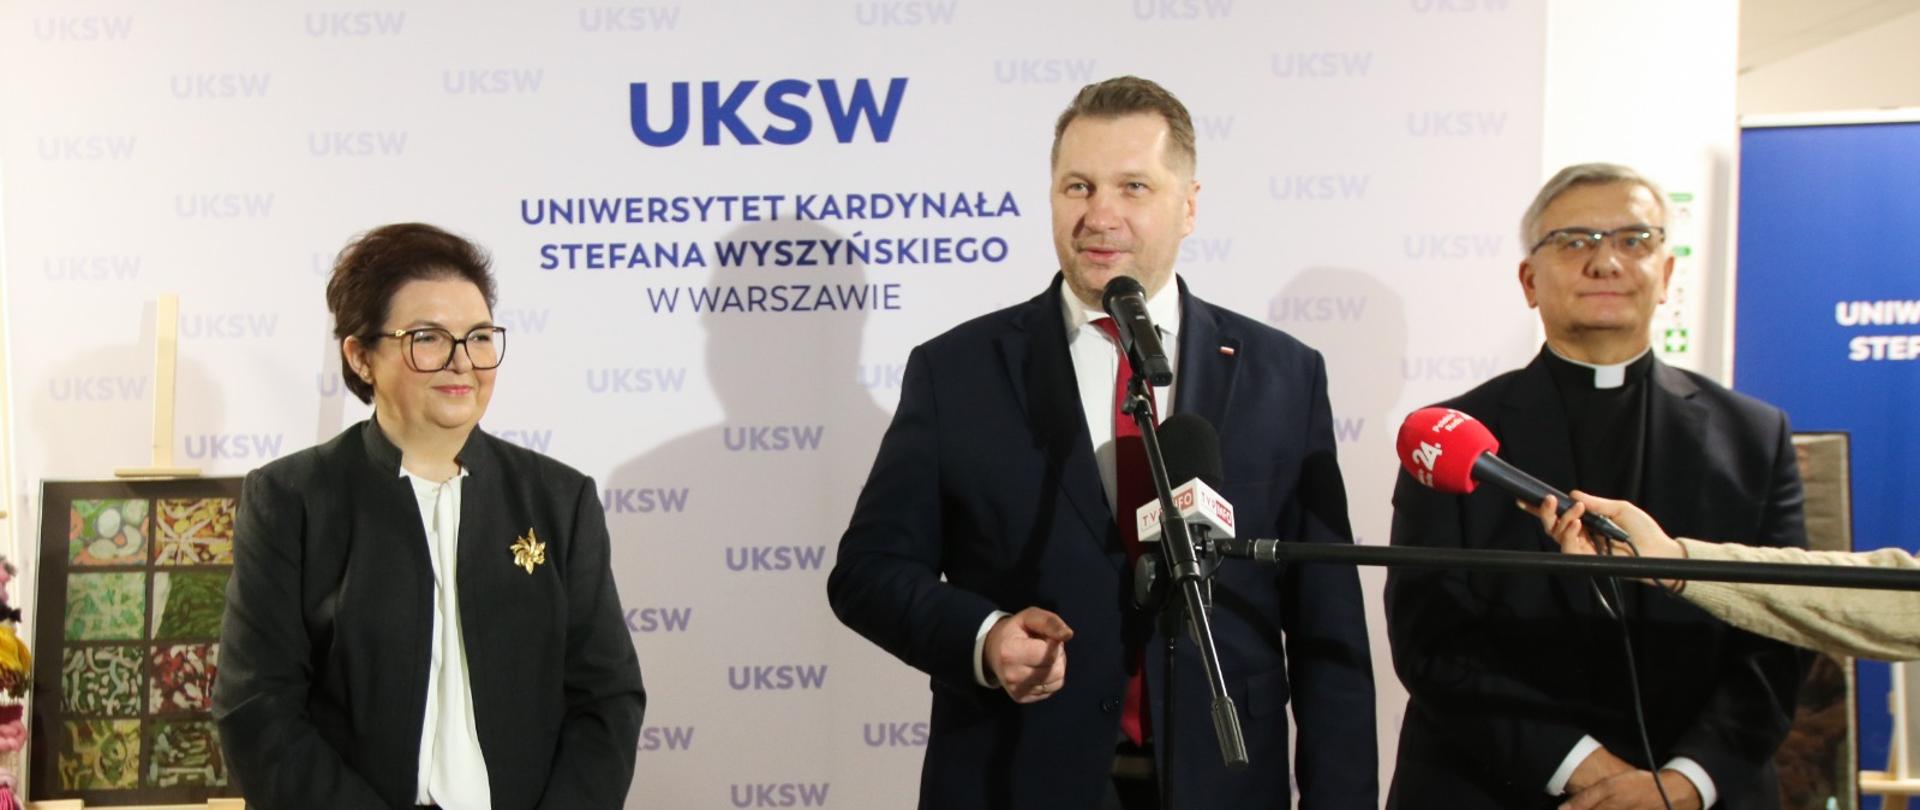 Minister Czarnek stoi pomiędzy ubranymi na czarno kobietą i mężczyzną, mówi do kilku mikrofonów, za nim ścianka z napisem UKSW.